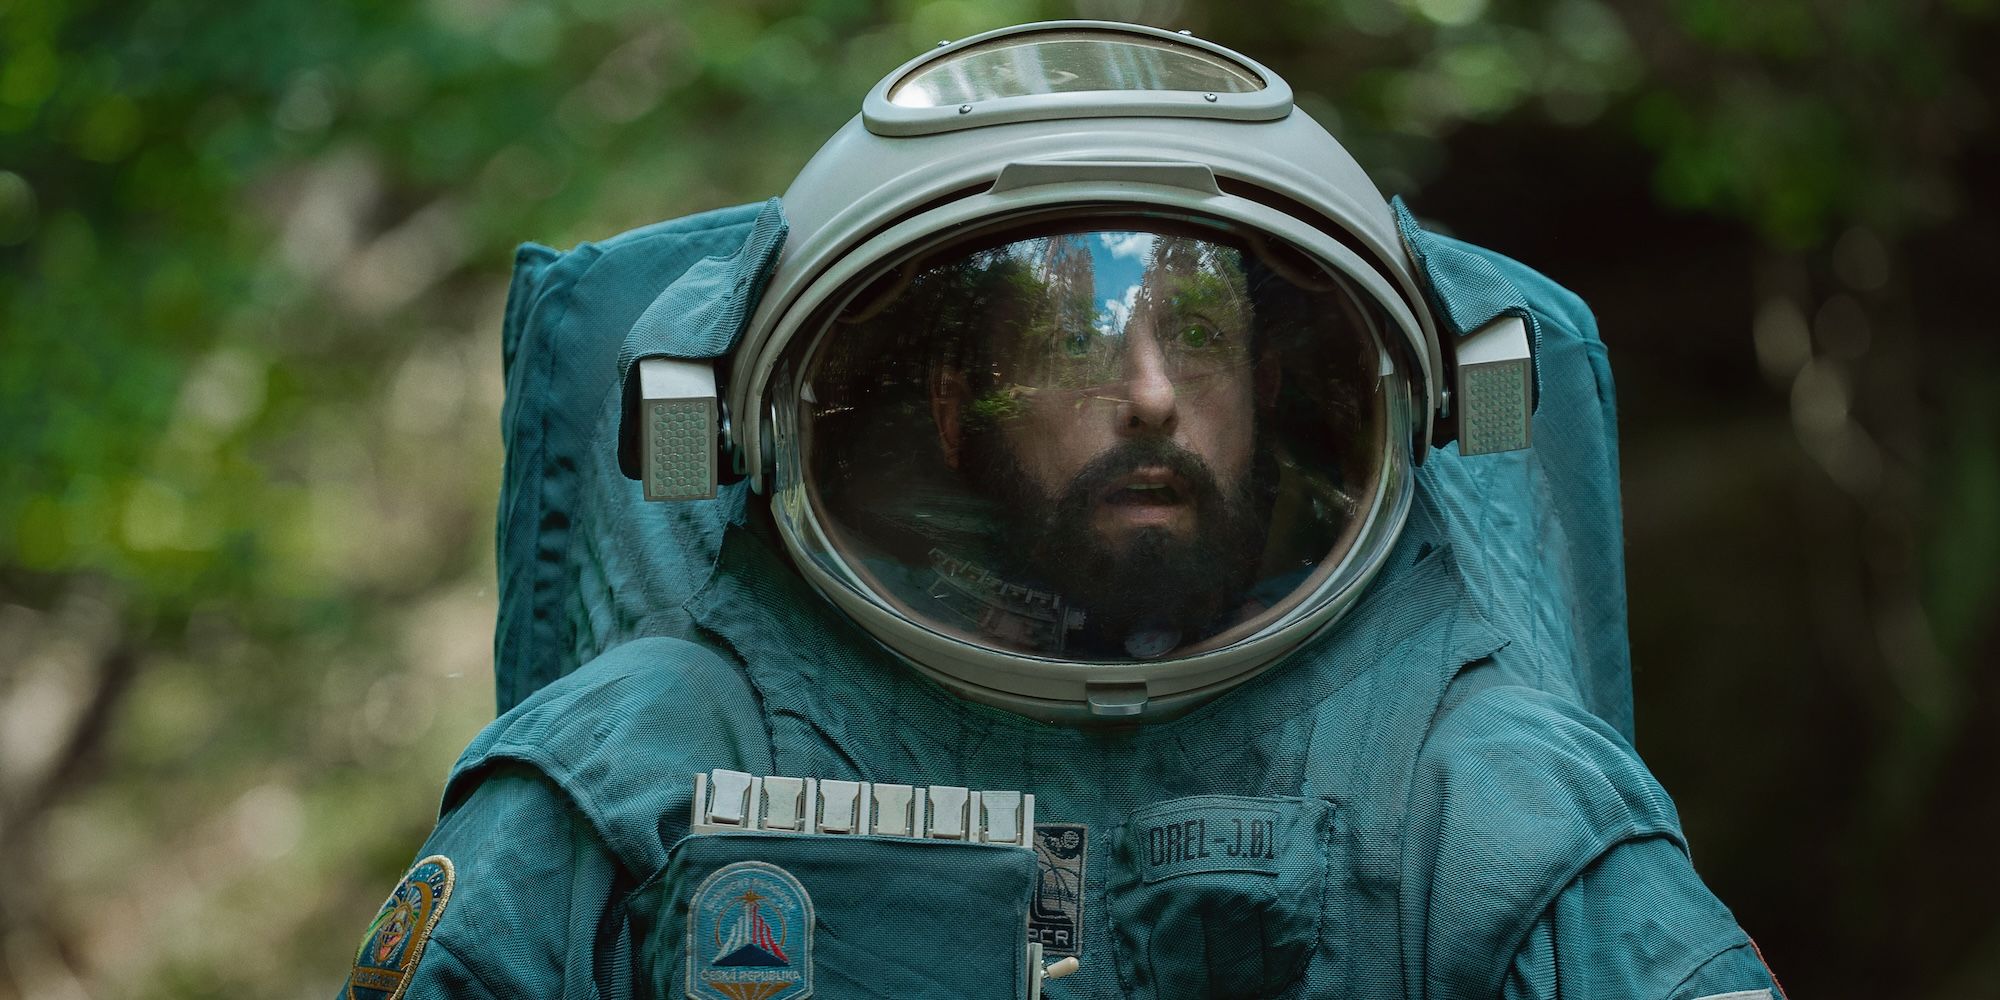 Adam Sandler wears an astronaut suit in Spaceman